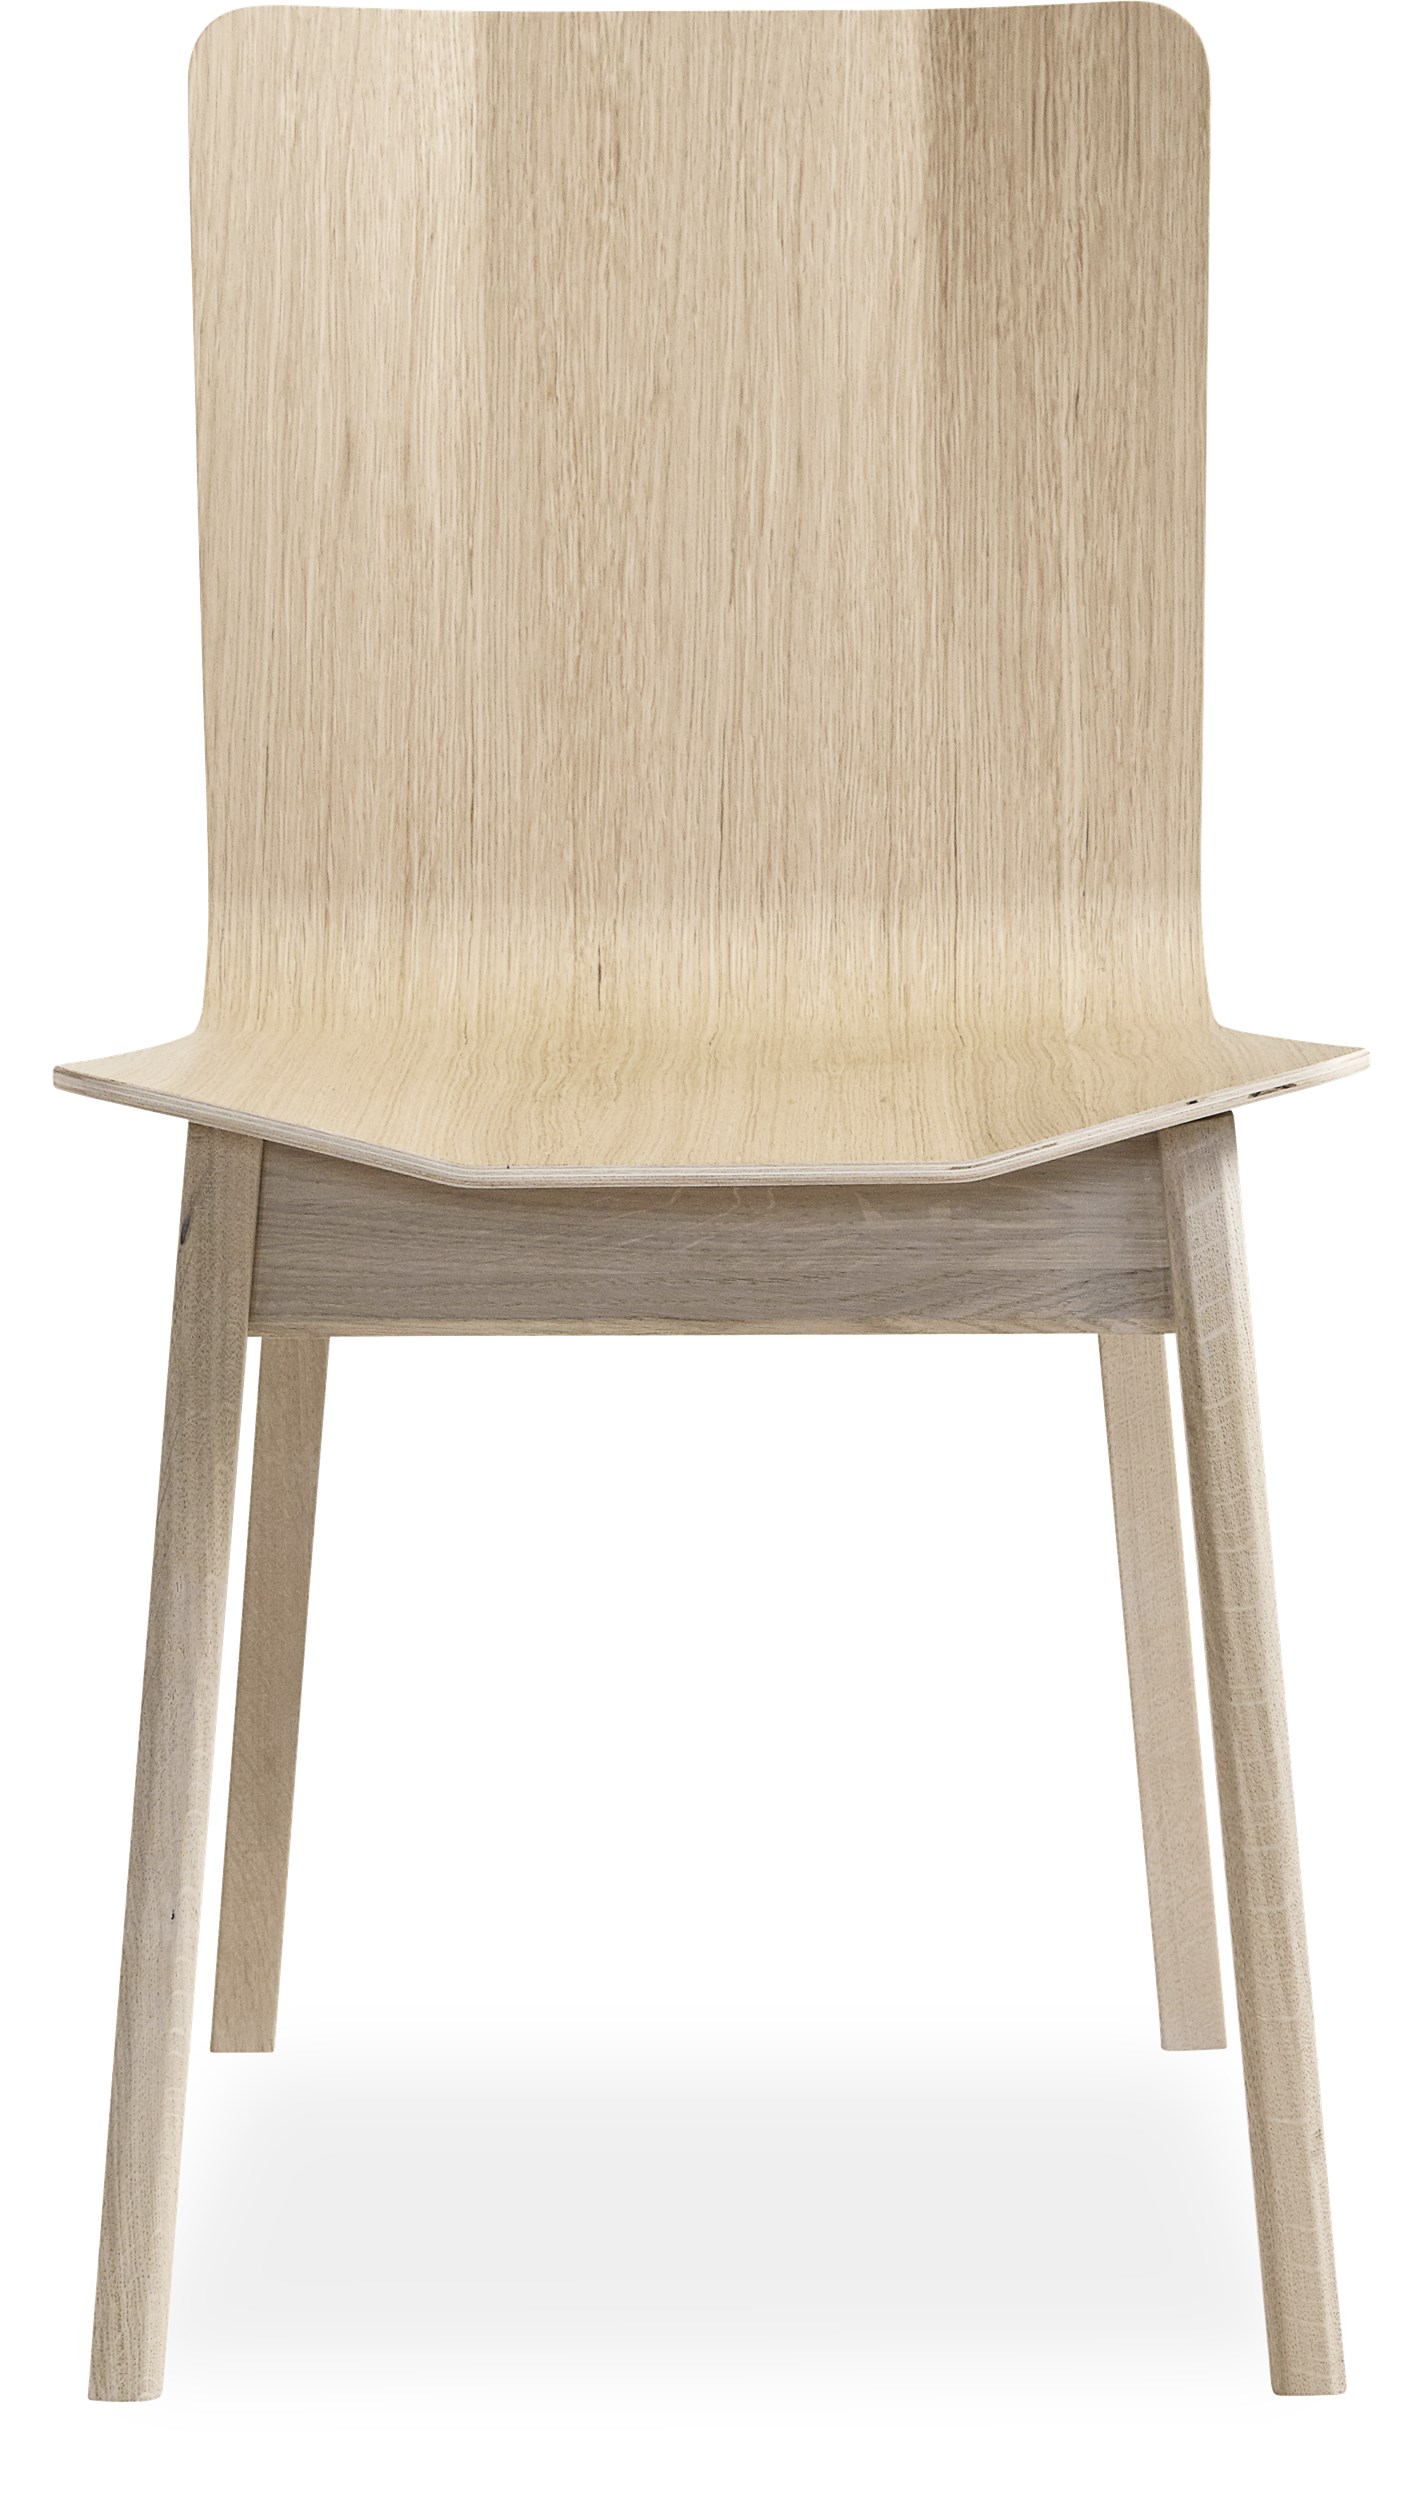 Skovby SM807 matstol - Sits i vitlackerat ekfaner och ben i vitlackerad massiv ek